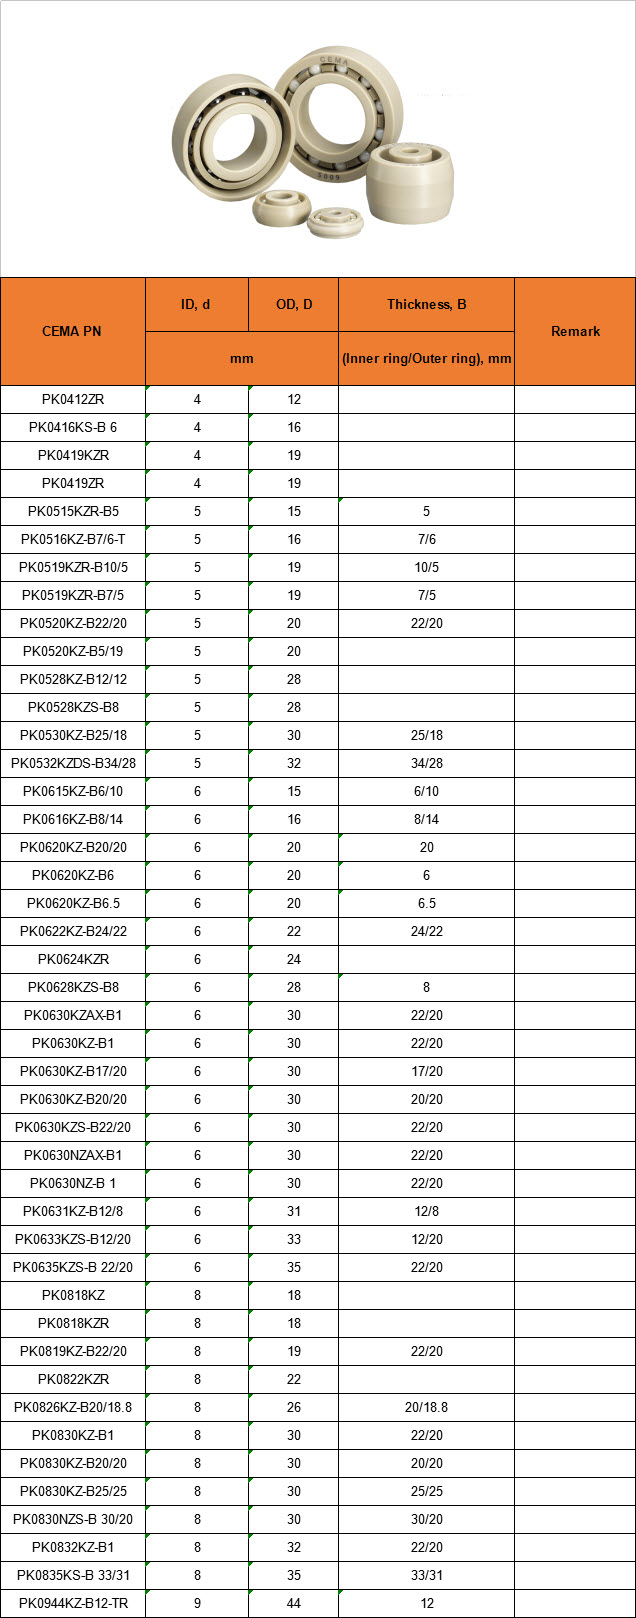 PK0412ZR | PK0416KS-B 6 | PK0419KZR | PK0419ZR | PK0515KZR-B5 | PK0516KZ-B7/6-T | PK0519KZR-B10/5 | PK0519KZR-B7/5 | PK0520KZ-B22/20 | PK0520KZ-B5/19 | PK0528KZ-B12/12 | PK0528KZS-B8 | PK0530KZ-B25/18 | PK0532KZDS-B34/28 | PK0615KZ-B6/10 | PK0616KZ-B8/14 | PK0620KZ-B20/20 | PK0620KZ-B6 | PK0620KZ-B6.5 | PK0622KZ-B24/22 | PK0624KZR | PK0628KZS-B8 | PK0630KZAX-B1 | PK0630KZ-B1 | PK0630KZ-B17/20 | PK0630KZ-B20/20 | PK0630KZS-B22/20 | PK0630NZAX-B1 | PK0630NZ-B 1 | PK0631KZ-B12/8 | PK0633KZS-B12/20 | PK0635KZS-B 22/20 | PK0818KZ | PK0818KZR | PK0819KZ-B22/20 | PK0822KZR | PK0826KZ-B20/18.8 | PK0830KZ-B1 | PK0830KZ-B20/20 | PK0830KZ-B25/25 | PK0830NZS-B 30/20 | PK0832KZ-B1 | PK0835KS-B 33/31 | PK0944KZ-B12-TR